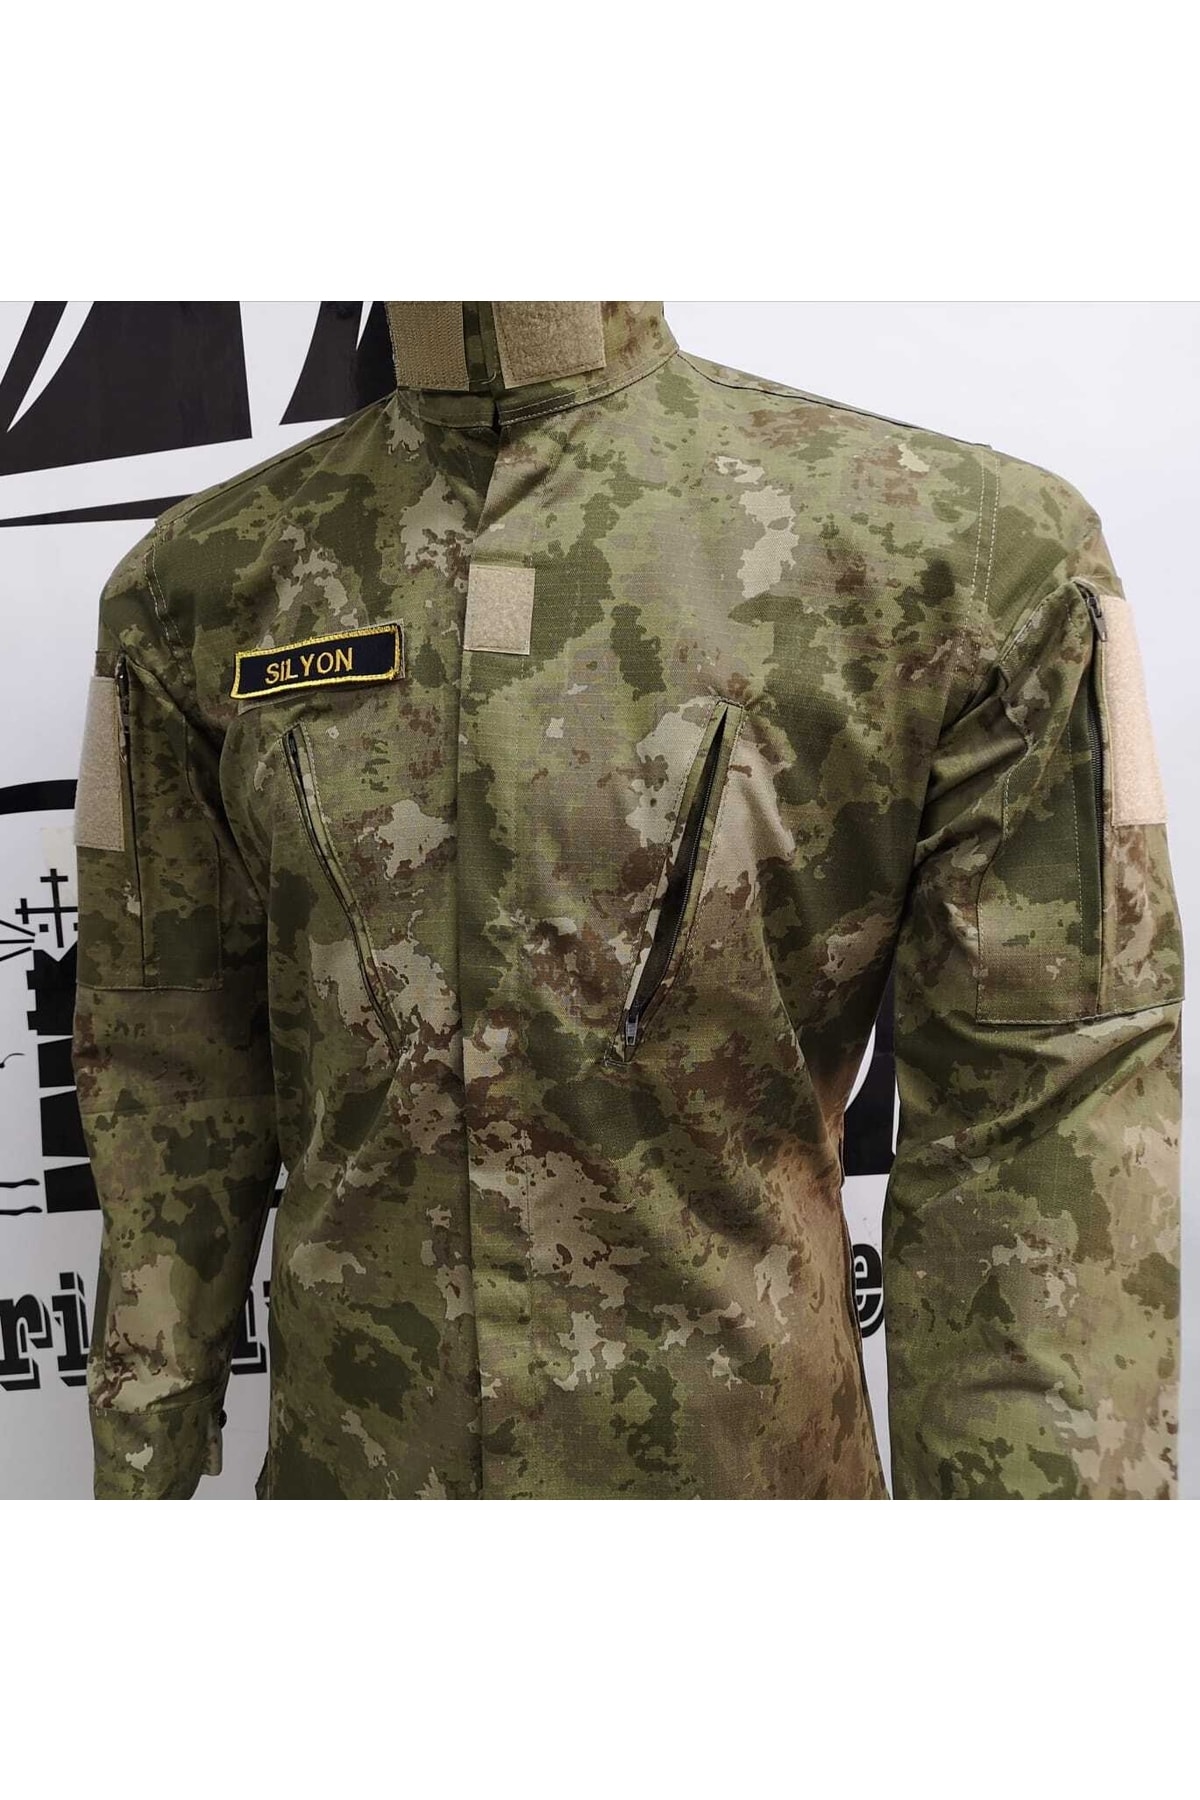 Silyon Askeri Giyim Yeni Kamuflaj Gömlek Yeni Piyade Renk Orjinal Kumaş